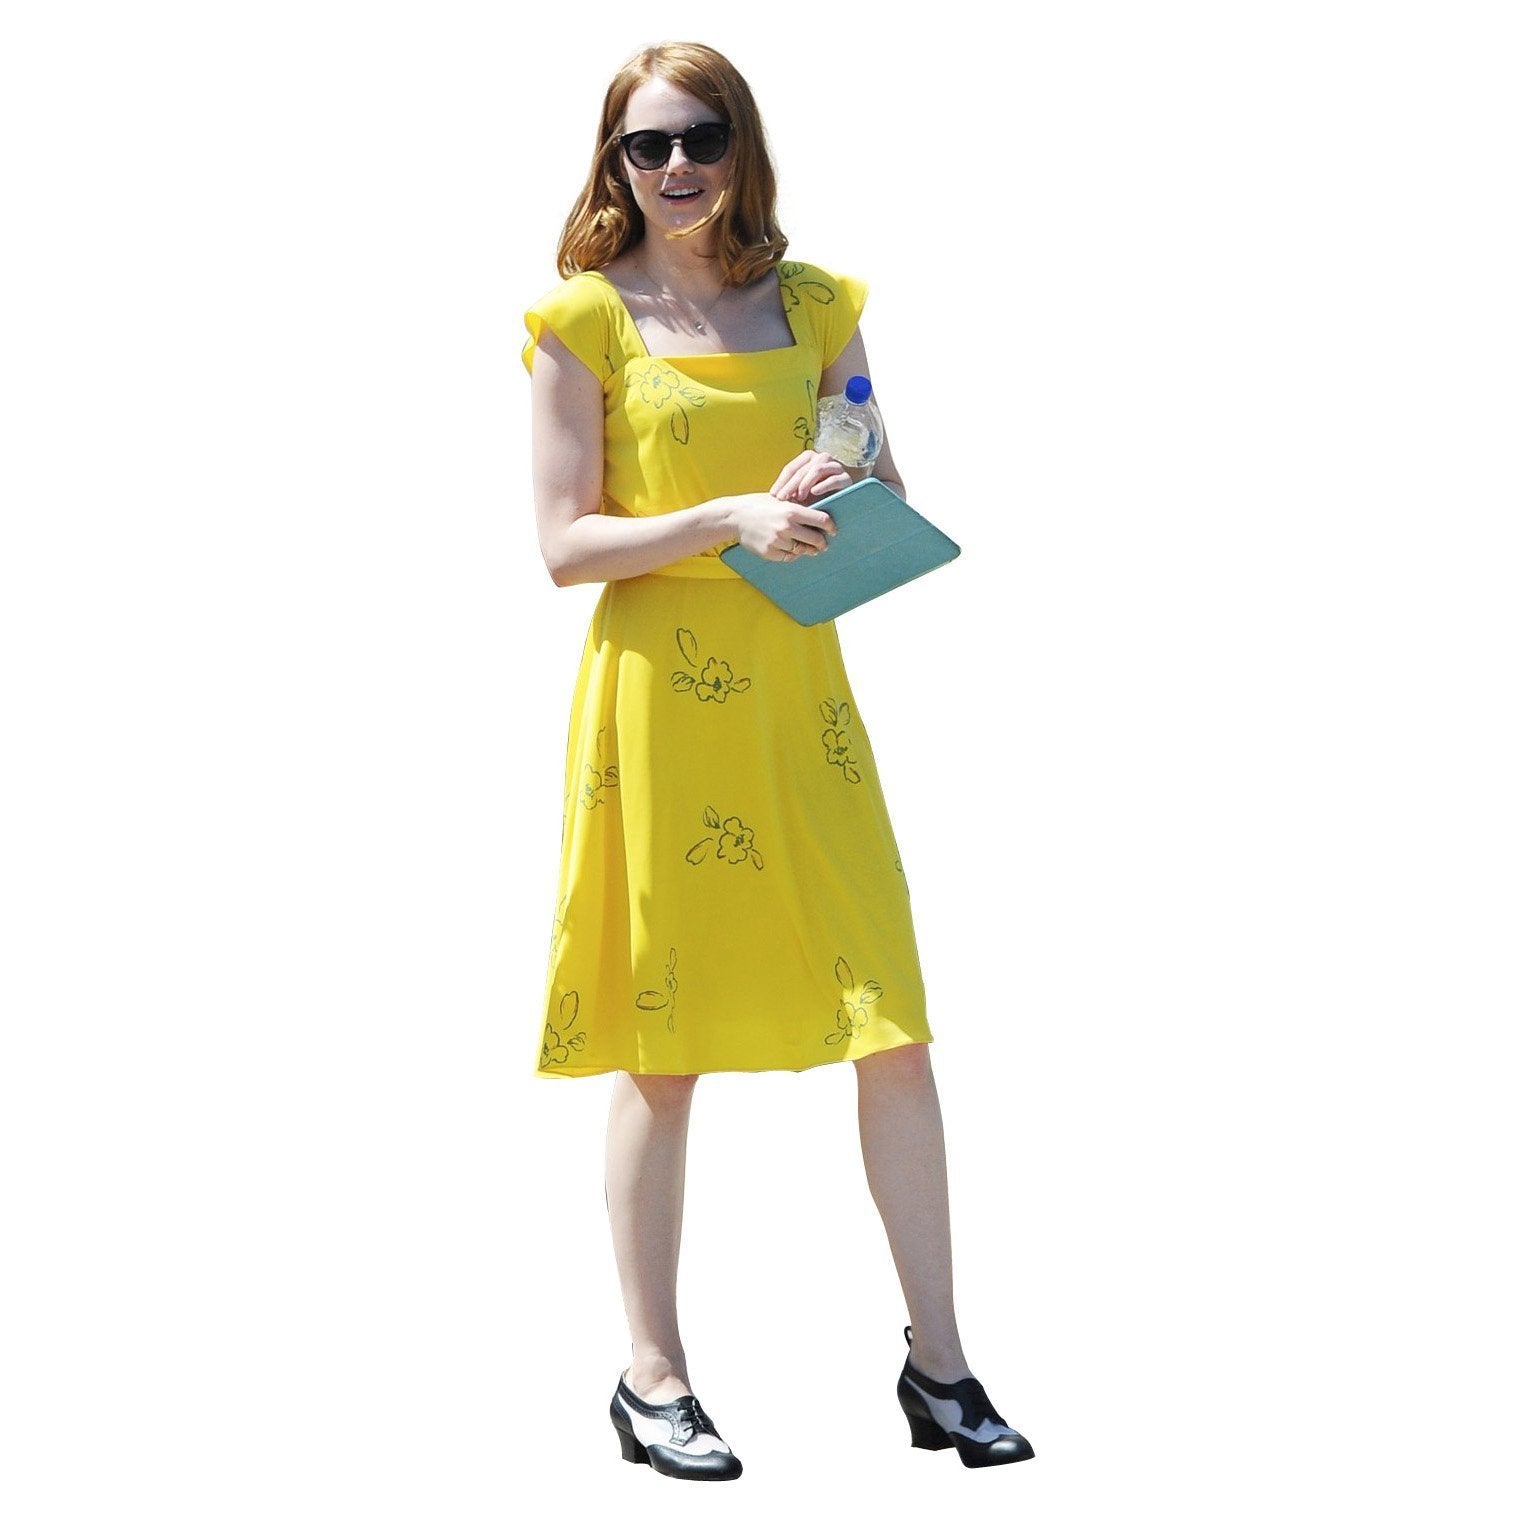 La La Land Emma Stone Actress Yellow Dress Movie Cosplay Costume